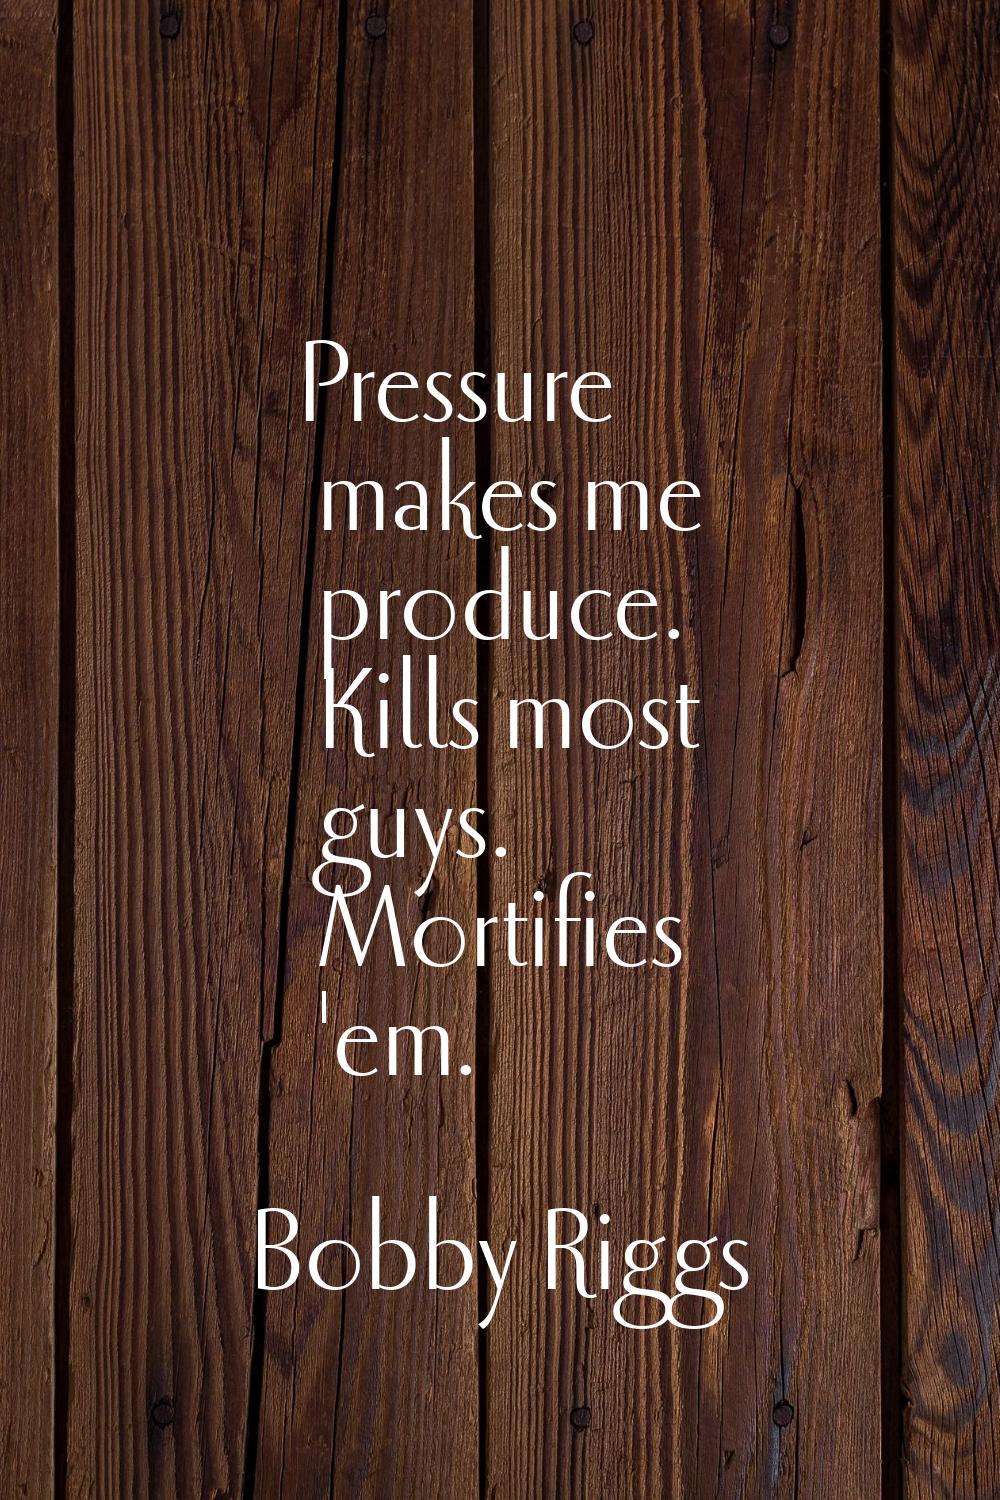 Pressure makes me produce. Kills most guys. Mortifies 'em.